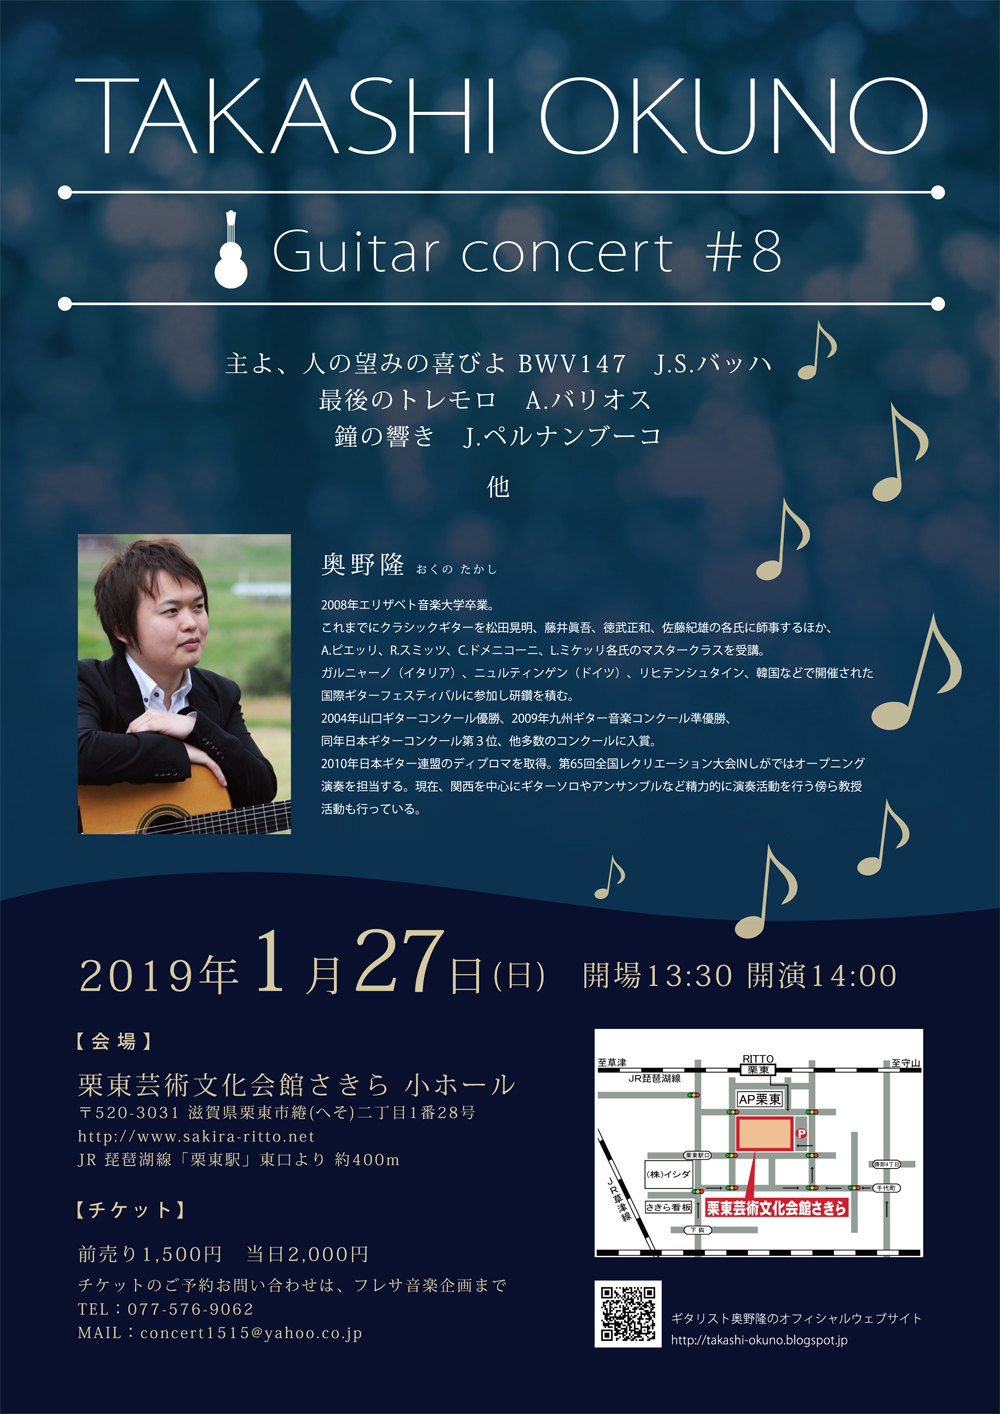 奥野隆コンサート情報 TAKASHI OKUNO Guitar concert #8